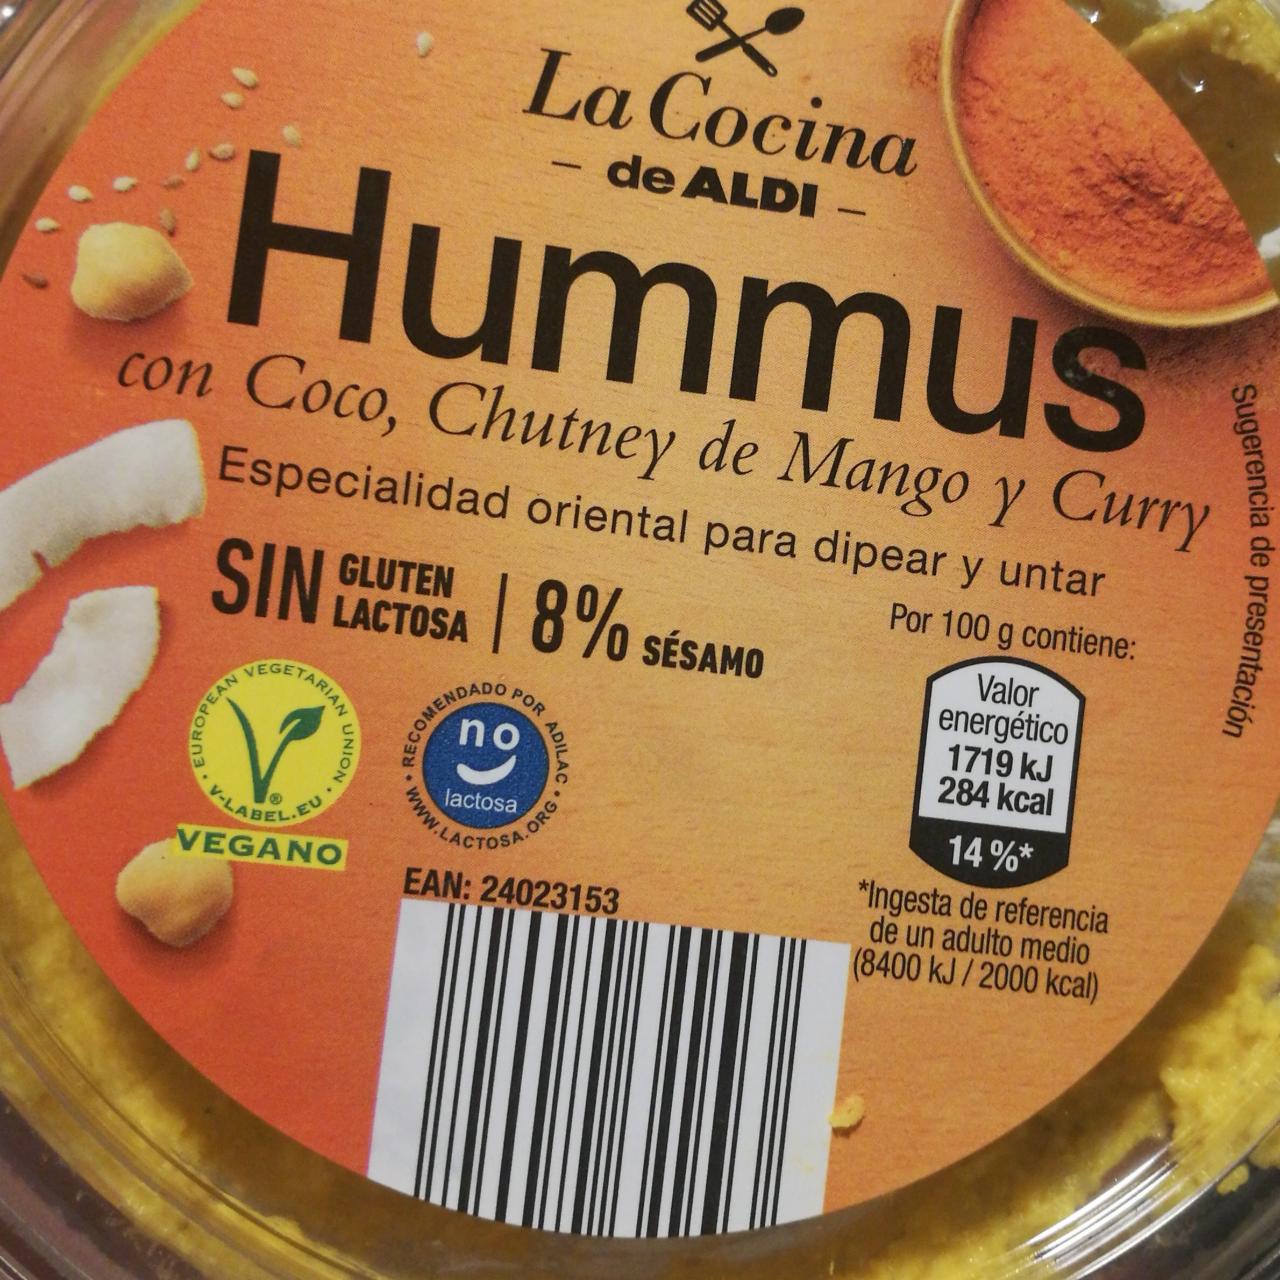 Fotografie - Hummus con Coco, Chutney de Mango y Curry La cocina de Aldi